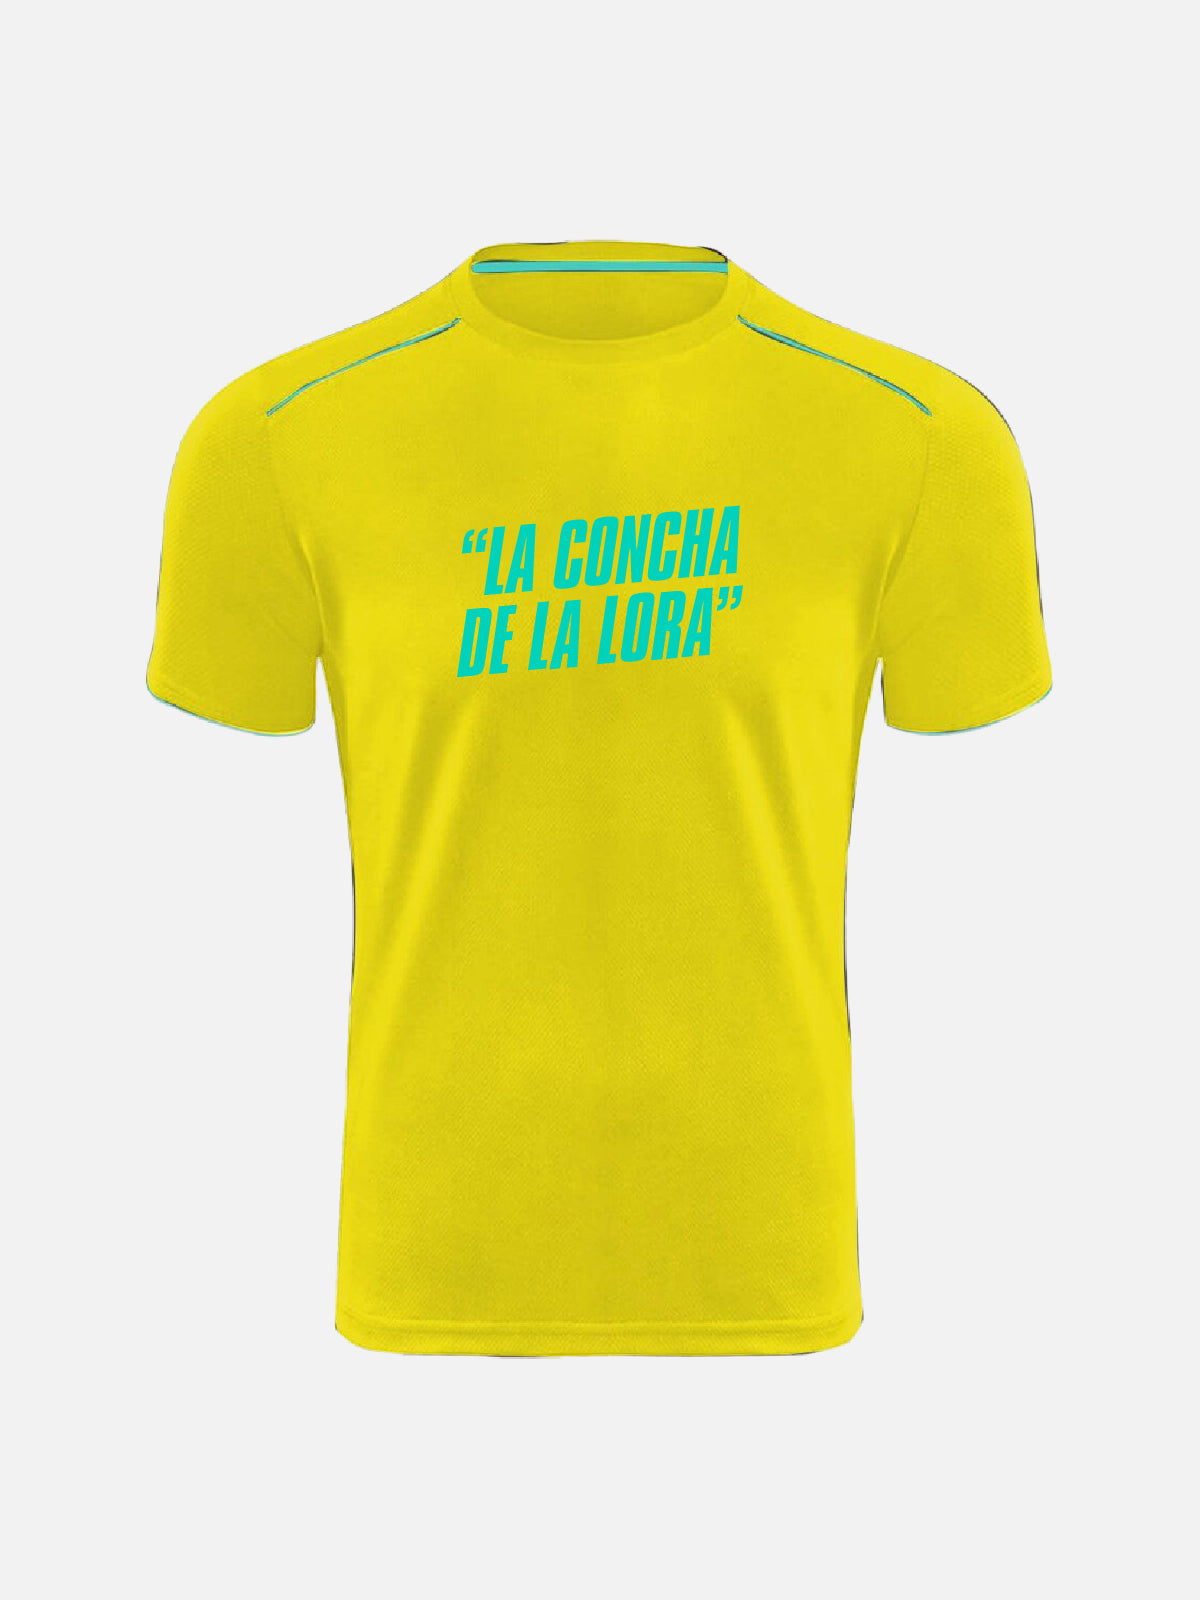 T-shirt - “La Concha De La Lora”